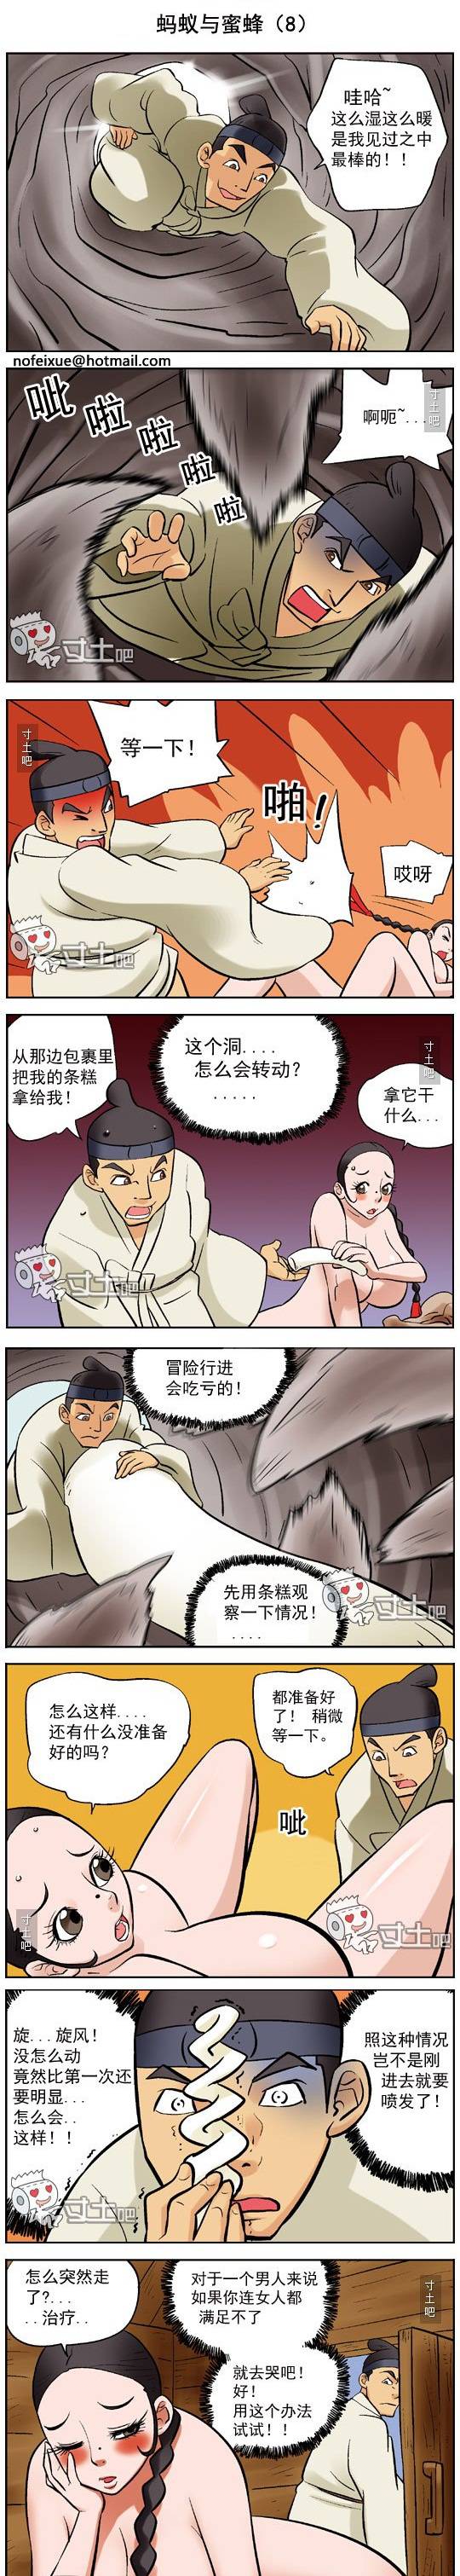 邪恶漫画爆笑囧图第351刊：灵活的舌头